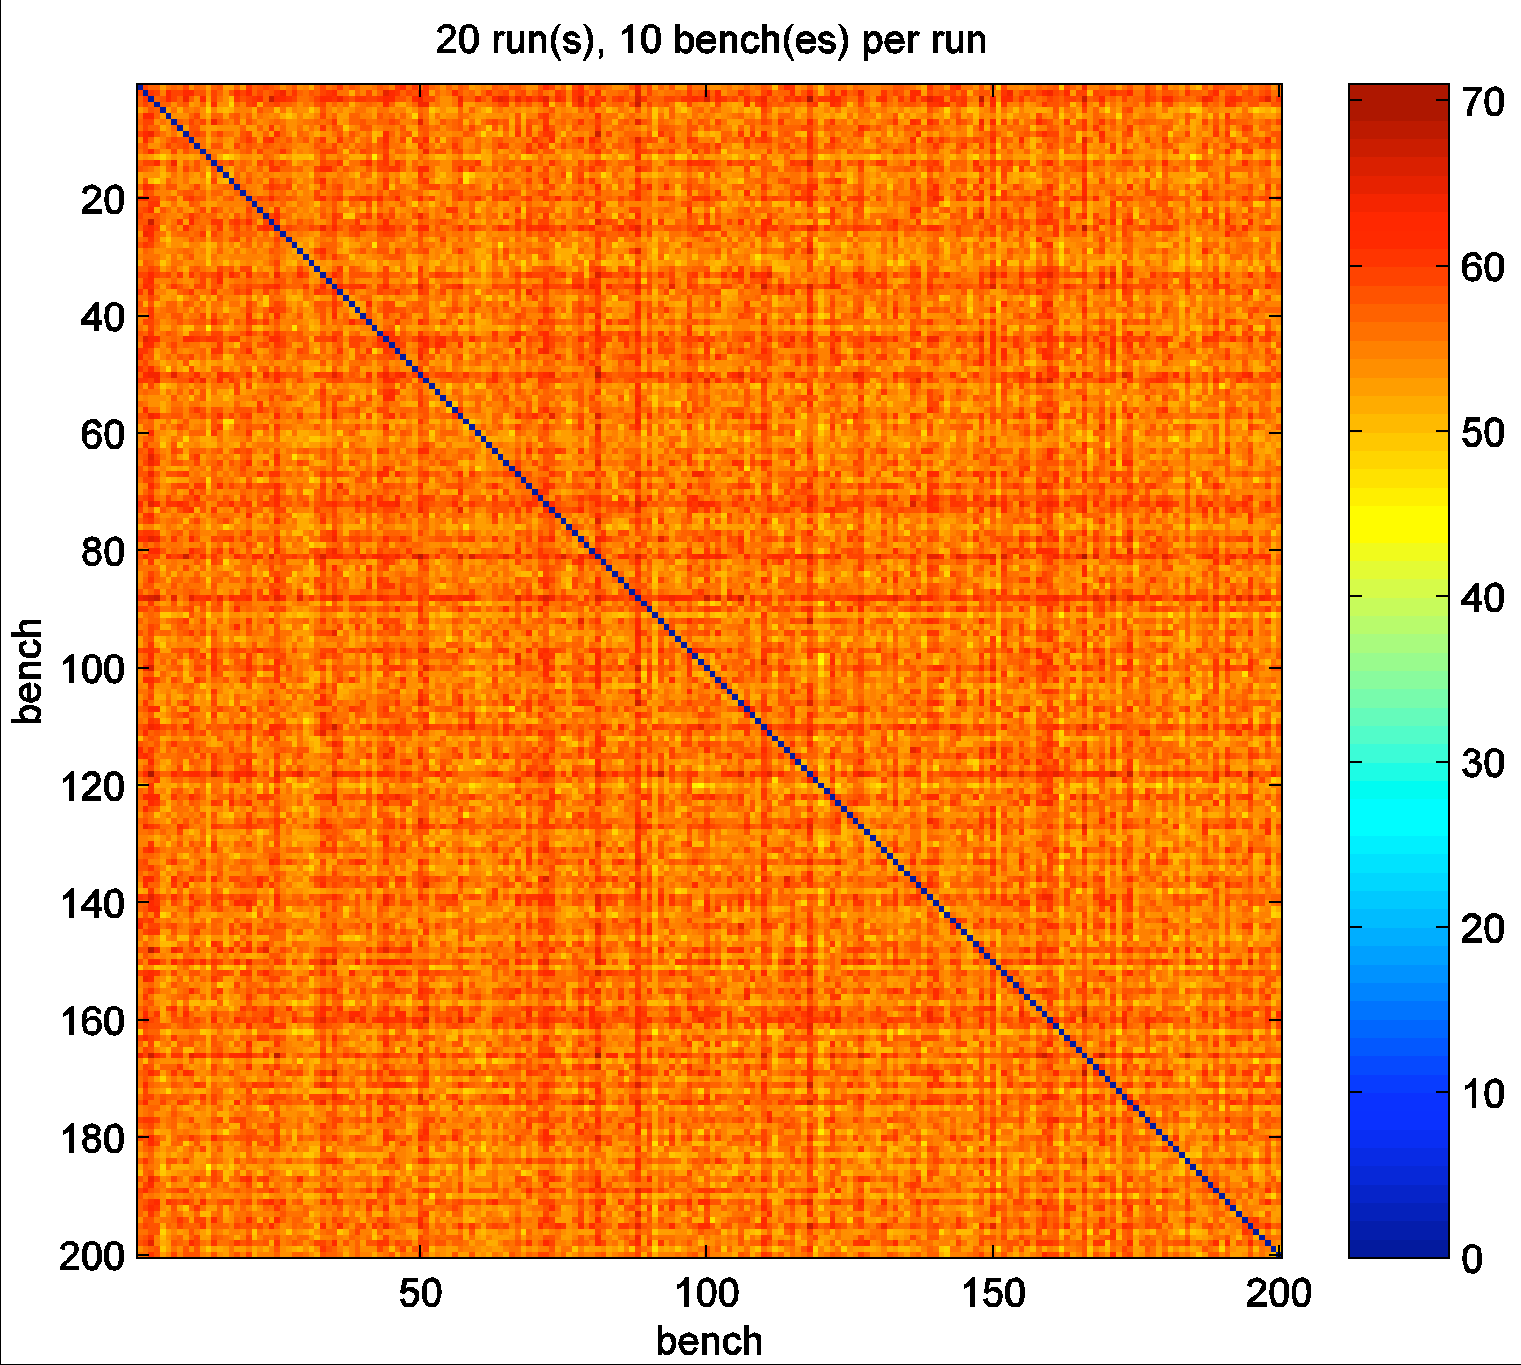 c 200 distinti semi Ogni seme produce sequenze random di 10^14 valori Ogni CPU un seme differente Caspur tra 0 e 99 ISS tra 100 e 199 Si